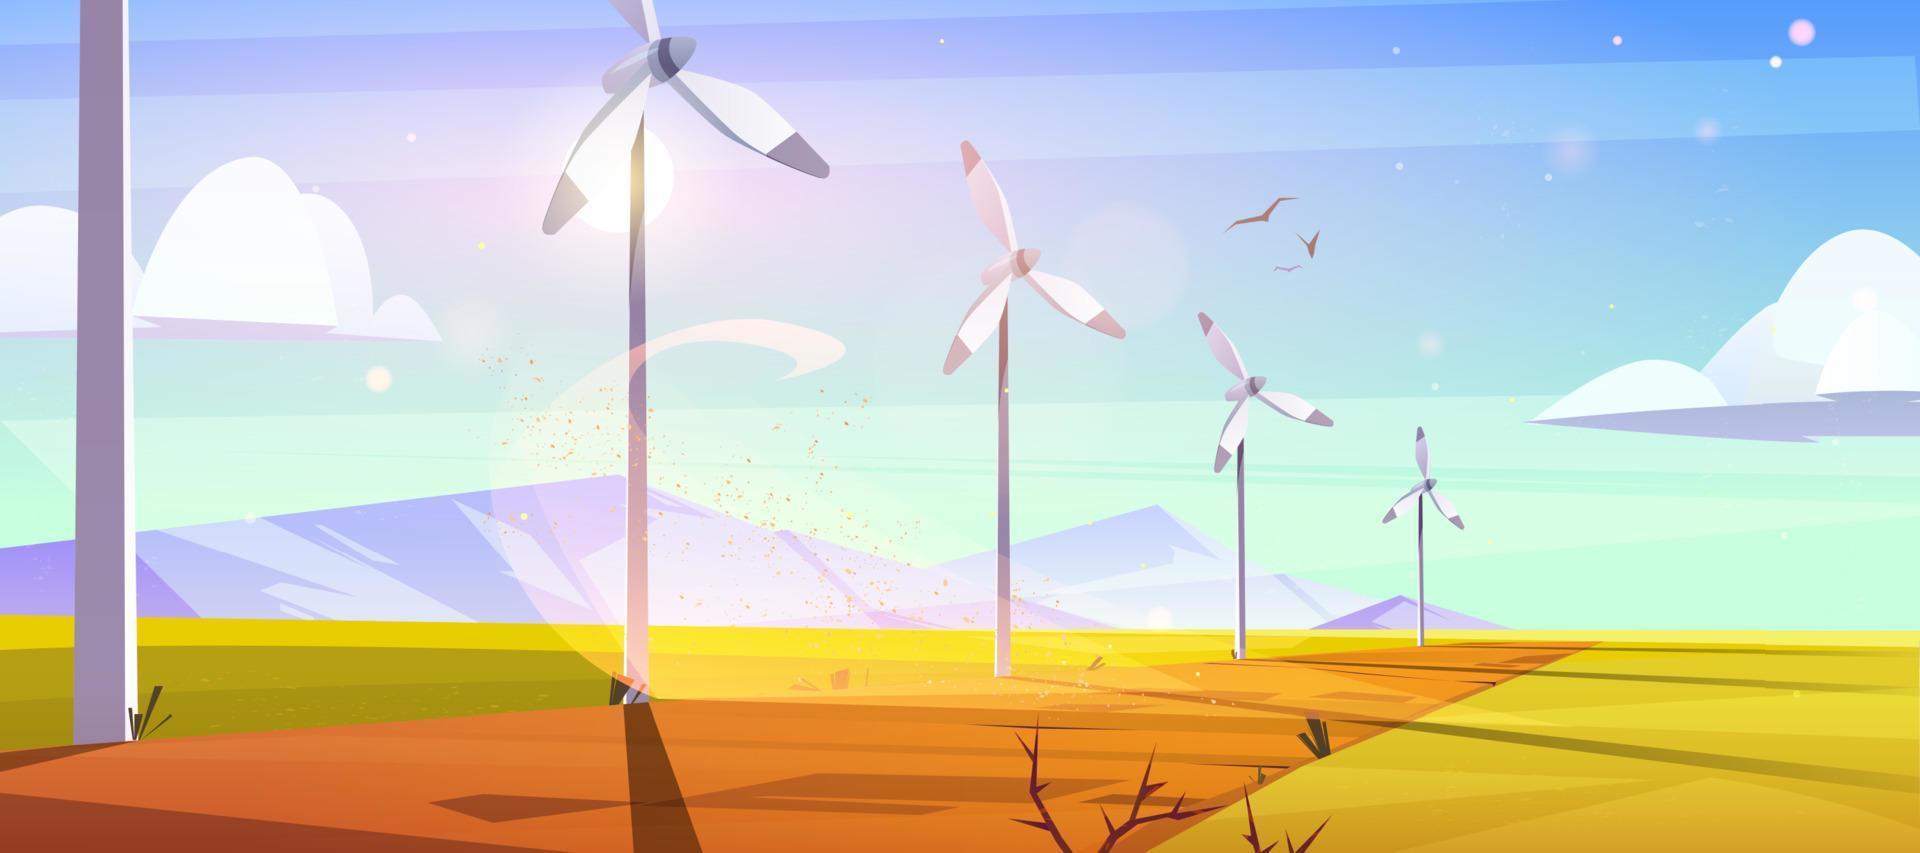 fazenda de energia sustentável com turbinas eólicas vetor